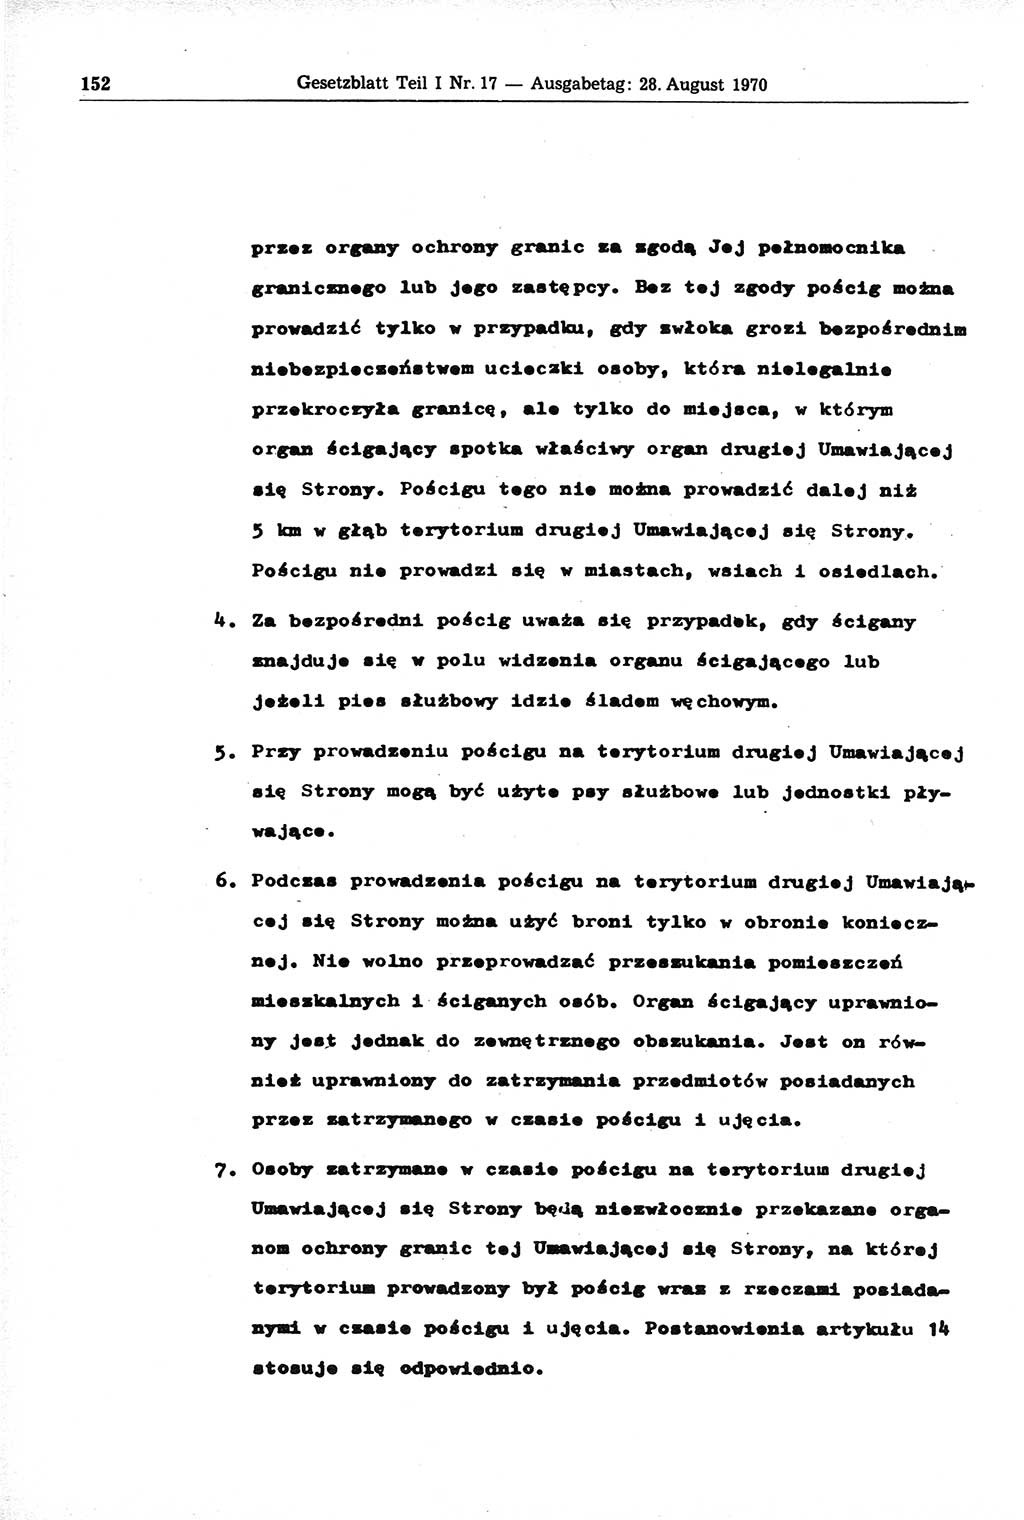 Gesetzblatt (GBl.) der Deutschen Demokratischen Republik (DDR) Teil Ⅰ 1970, Seite 152 (GBl. DDR Ⅰ 1970, S. 152)